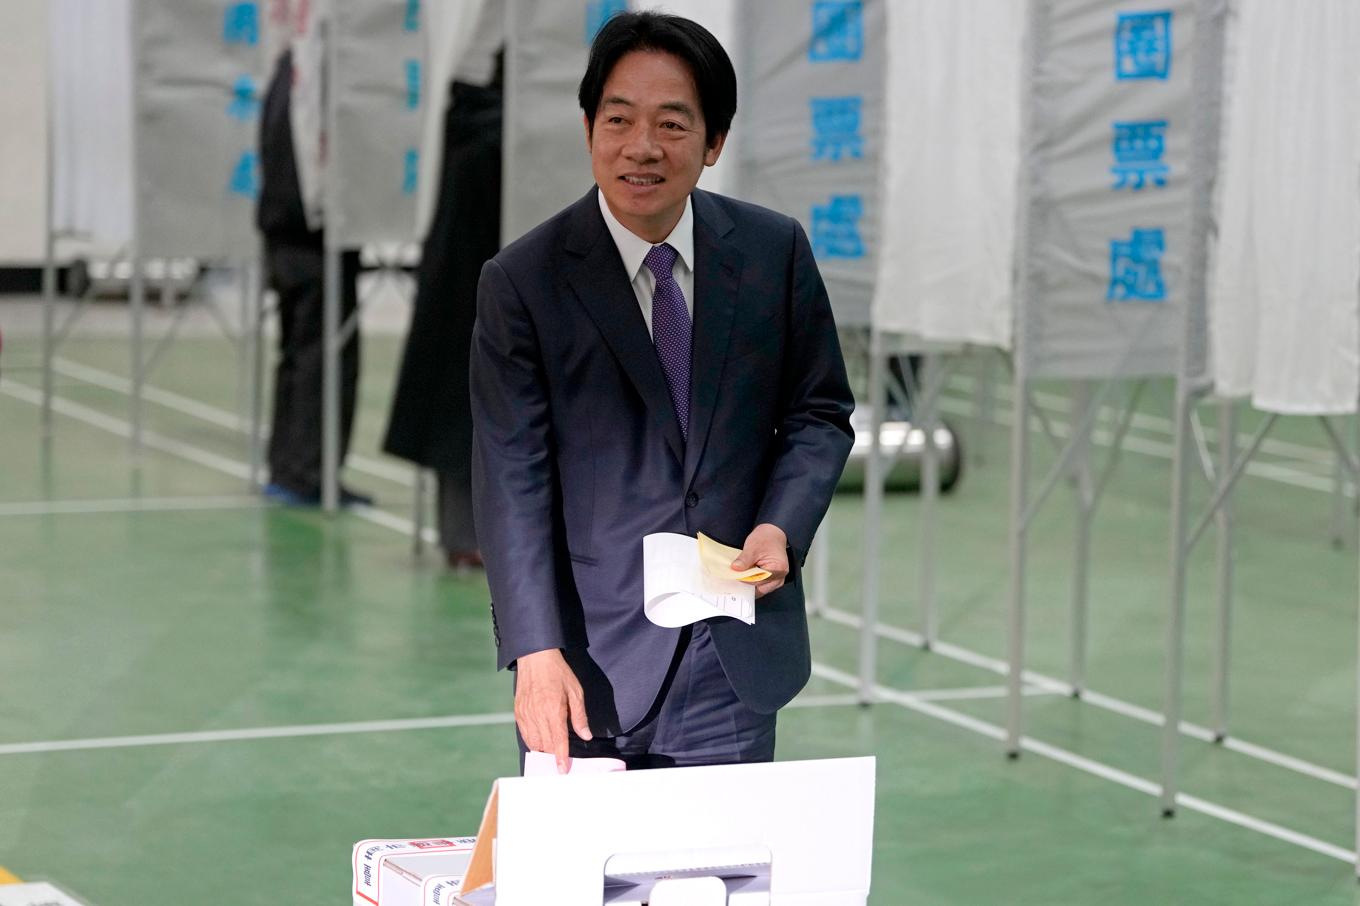 Nuvarande vicepresidenten och kandidaten i Taiwans presidentval, partiet DPP:s Lai Ching-te, röstar i lördagens val. Foto: Ng Han Guan/AP/TT